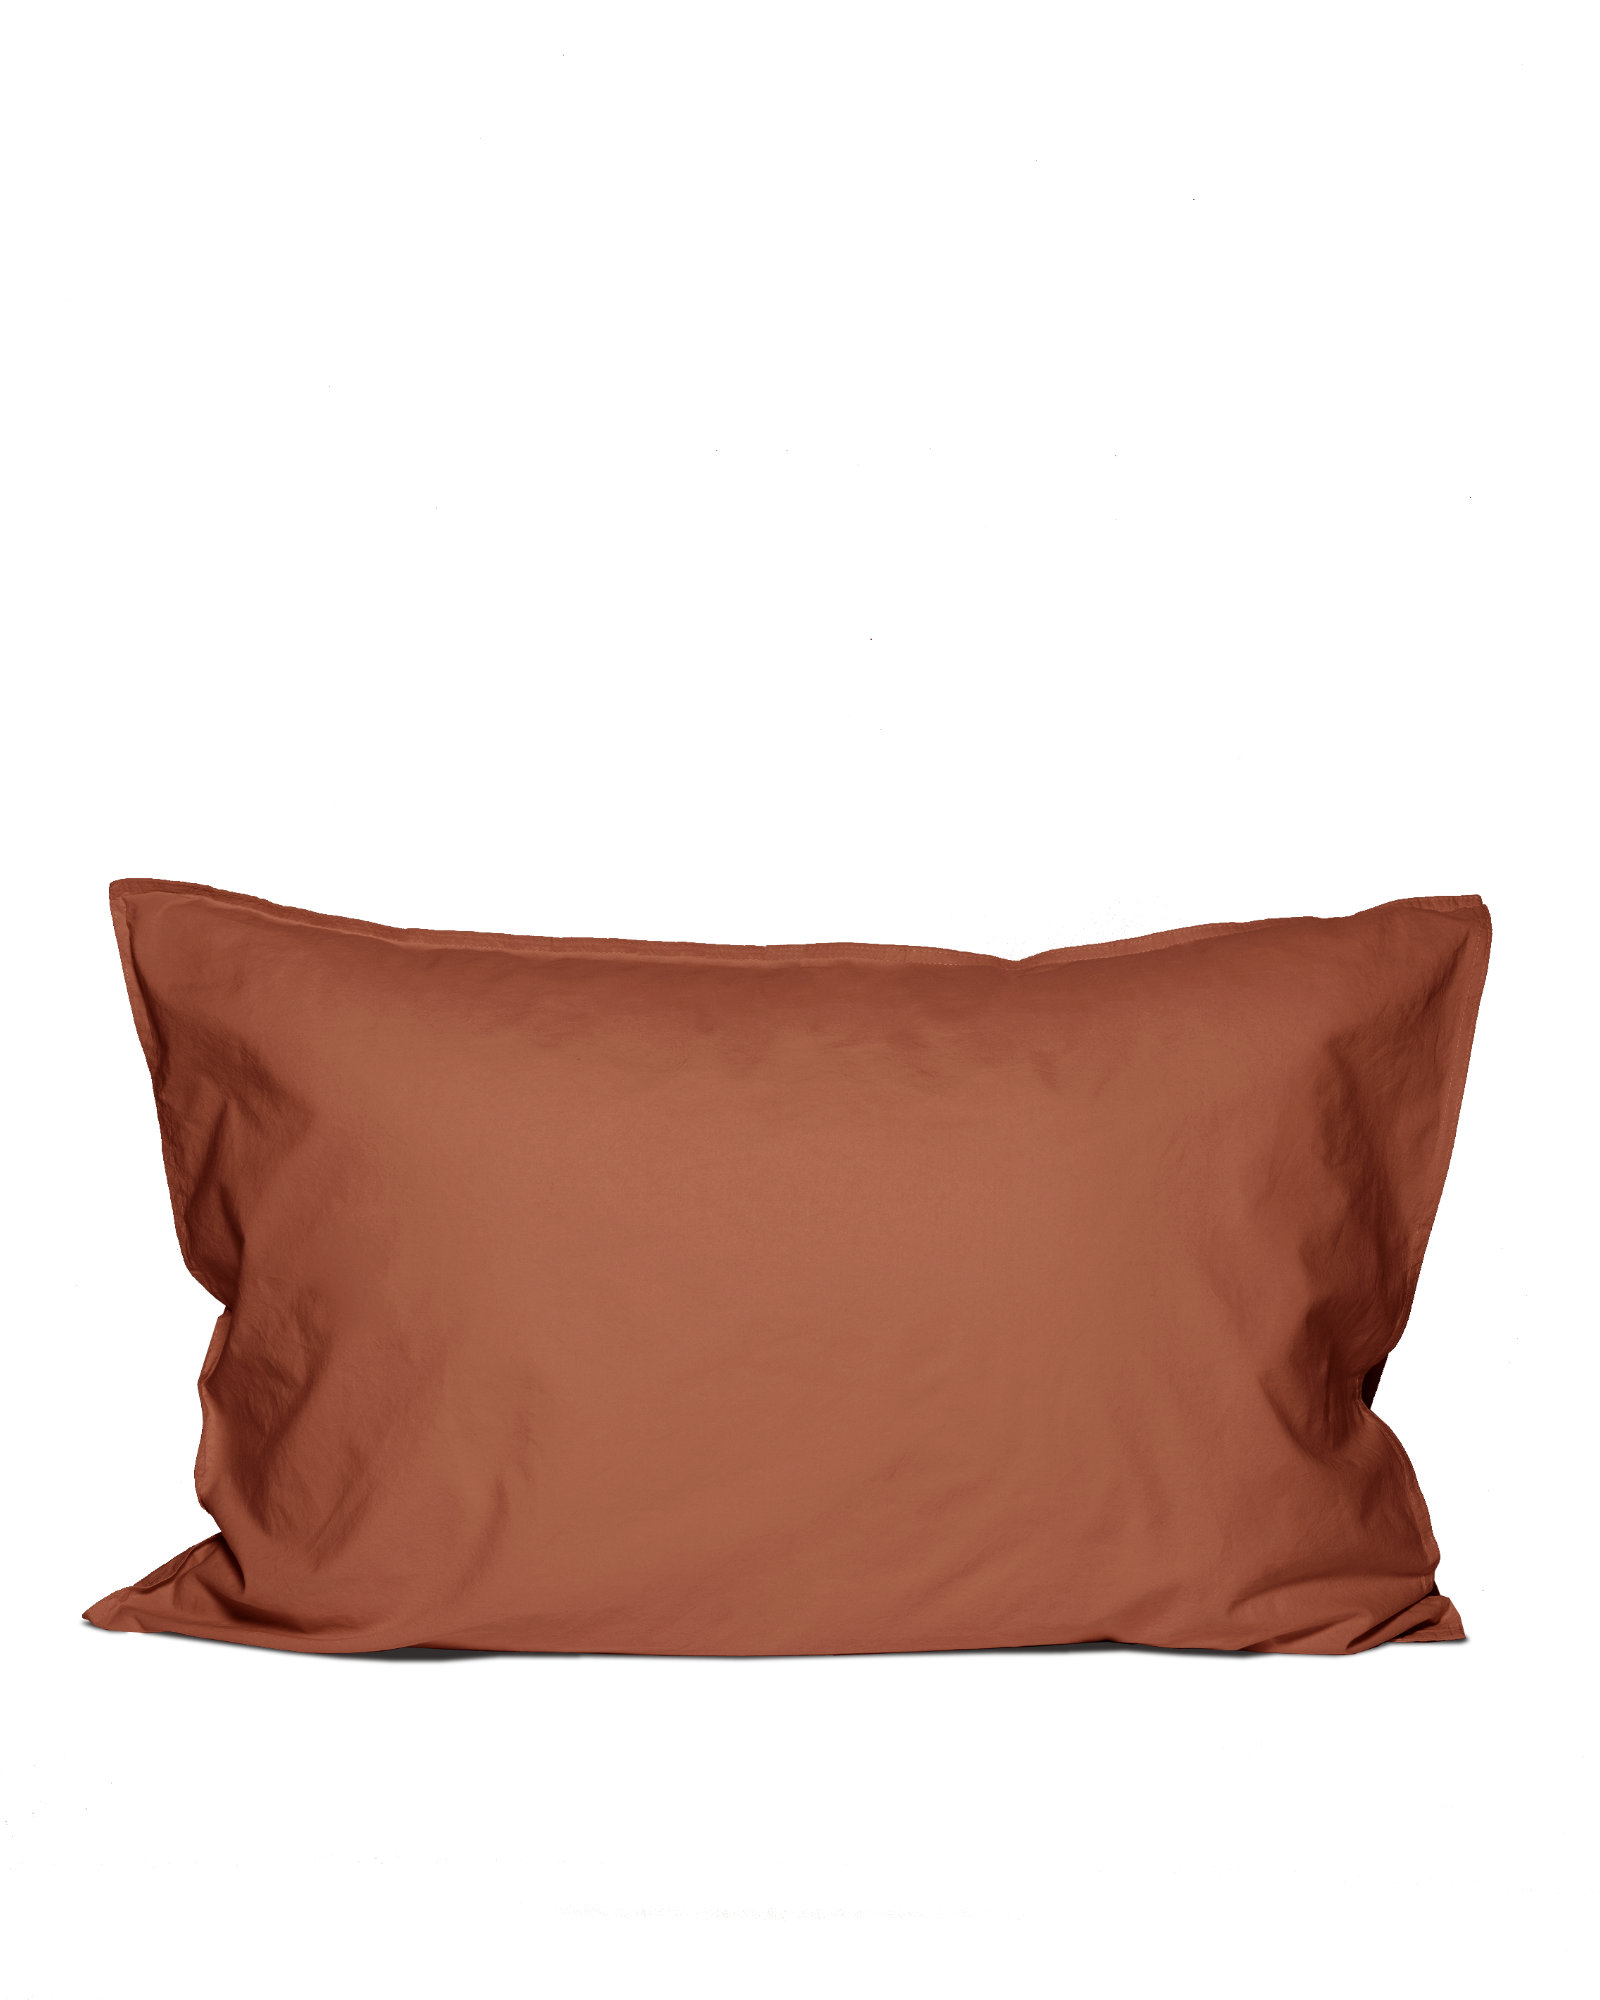 MARIE-MARIE - Pillowcase SLEEPY SATEEN Sunbaked Caramel - 50x75 cm - Sunbaked Caramel